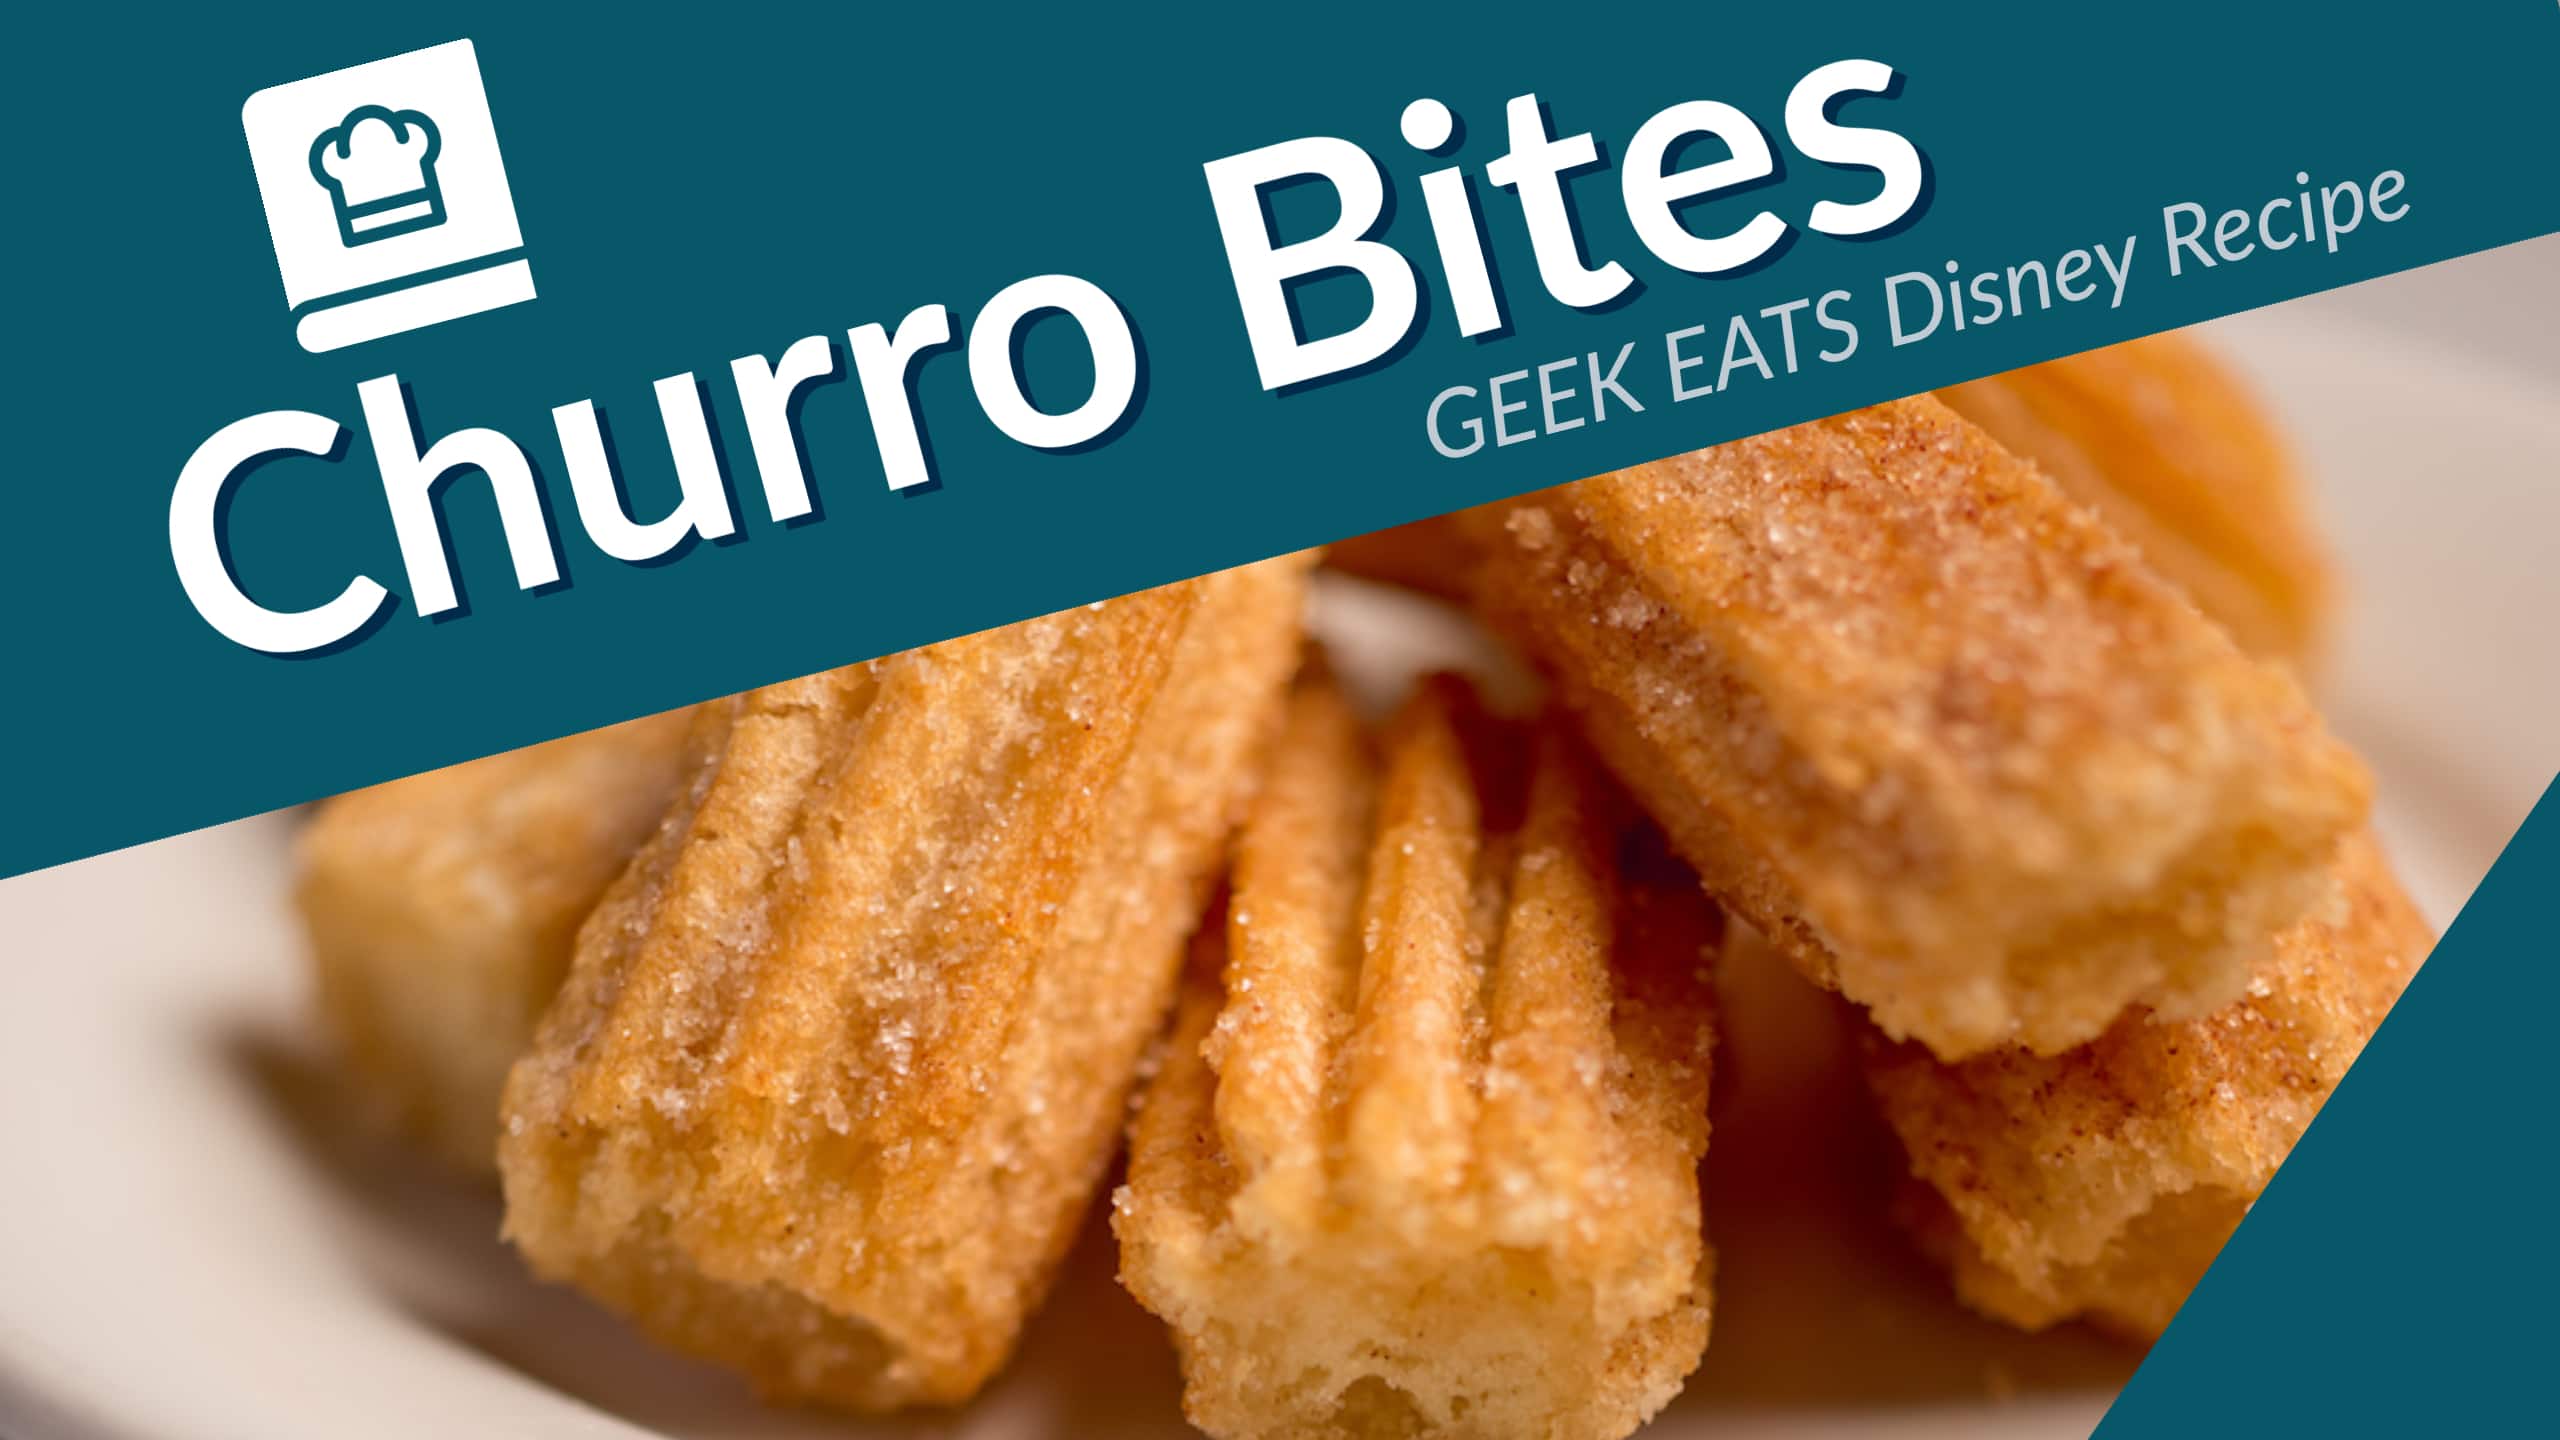 Churro Bites - GEEK EATS Disney Recipe